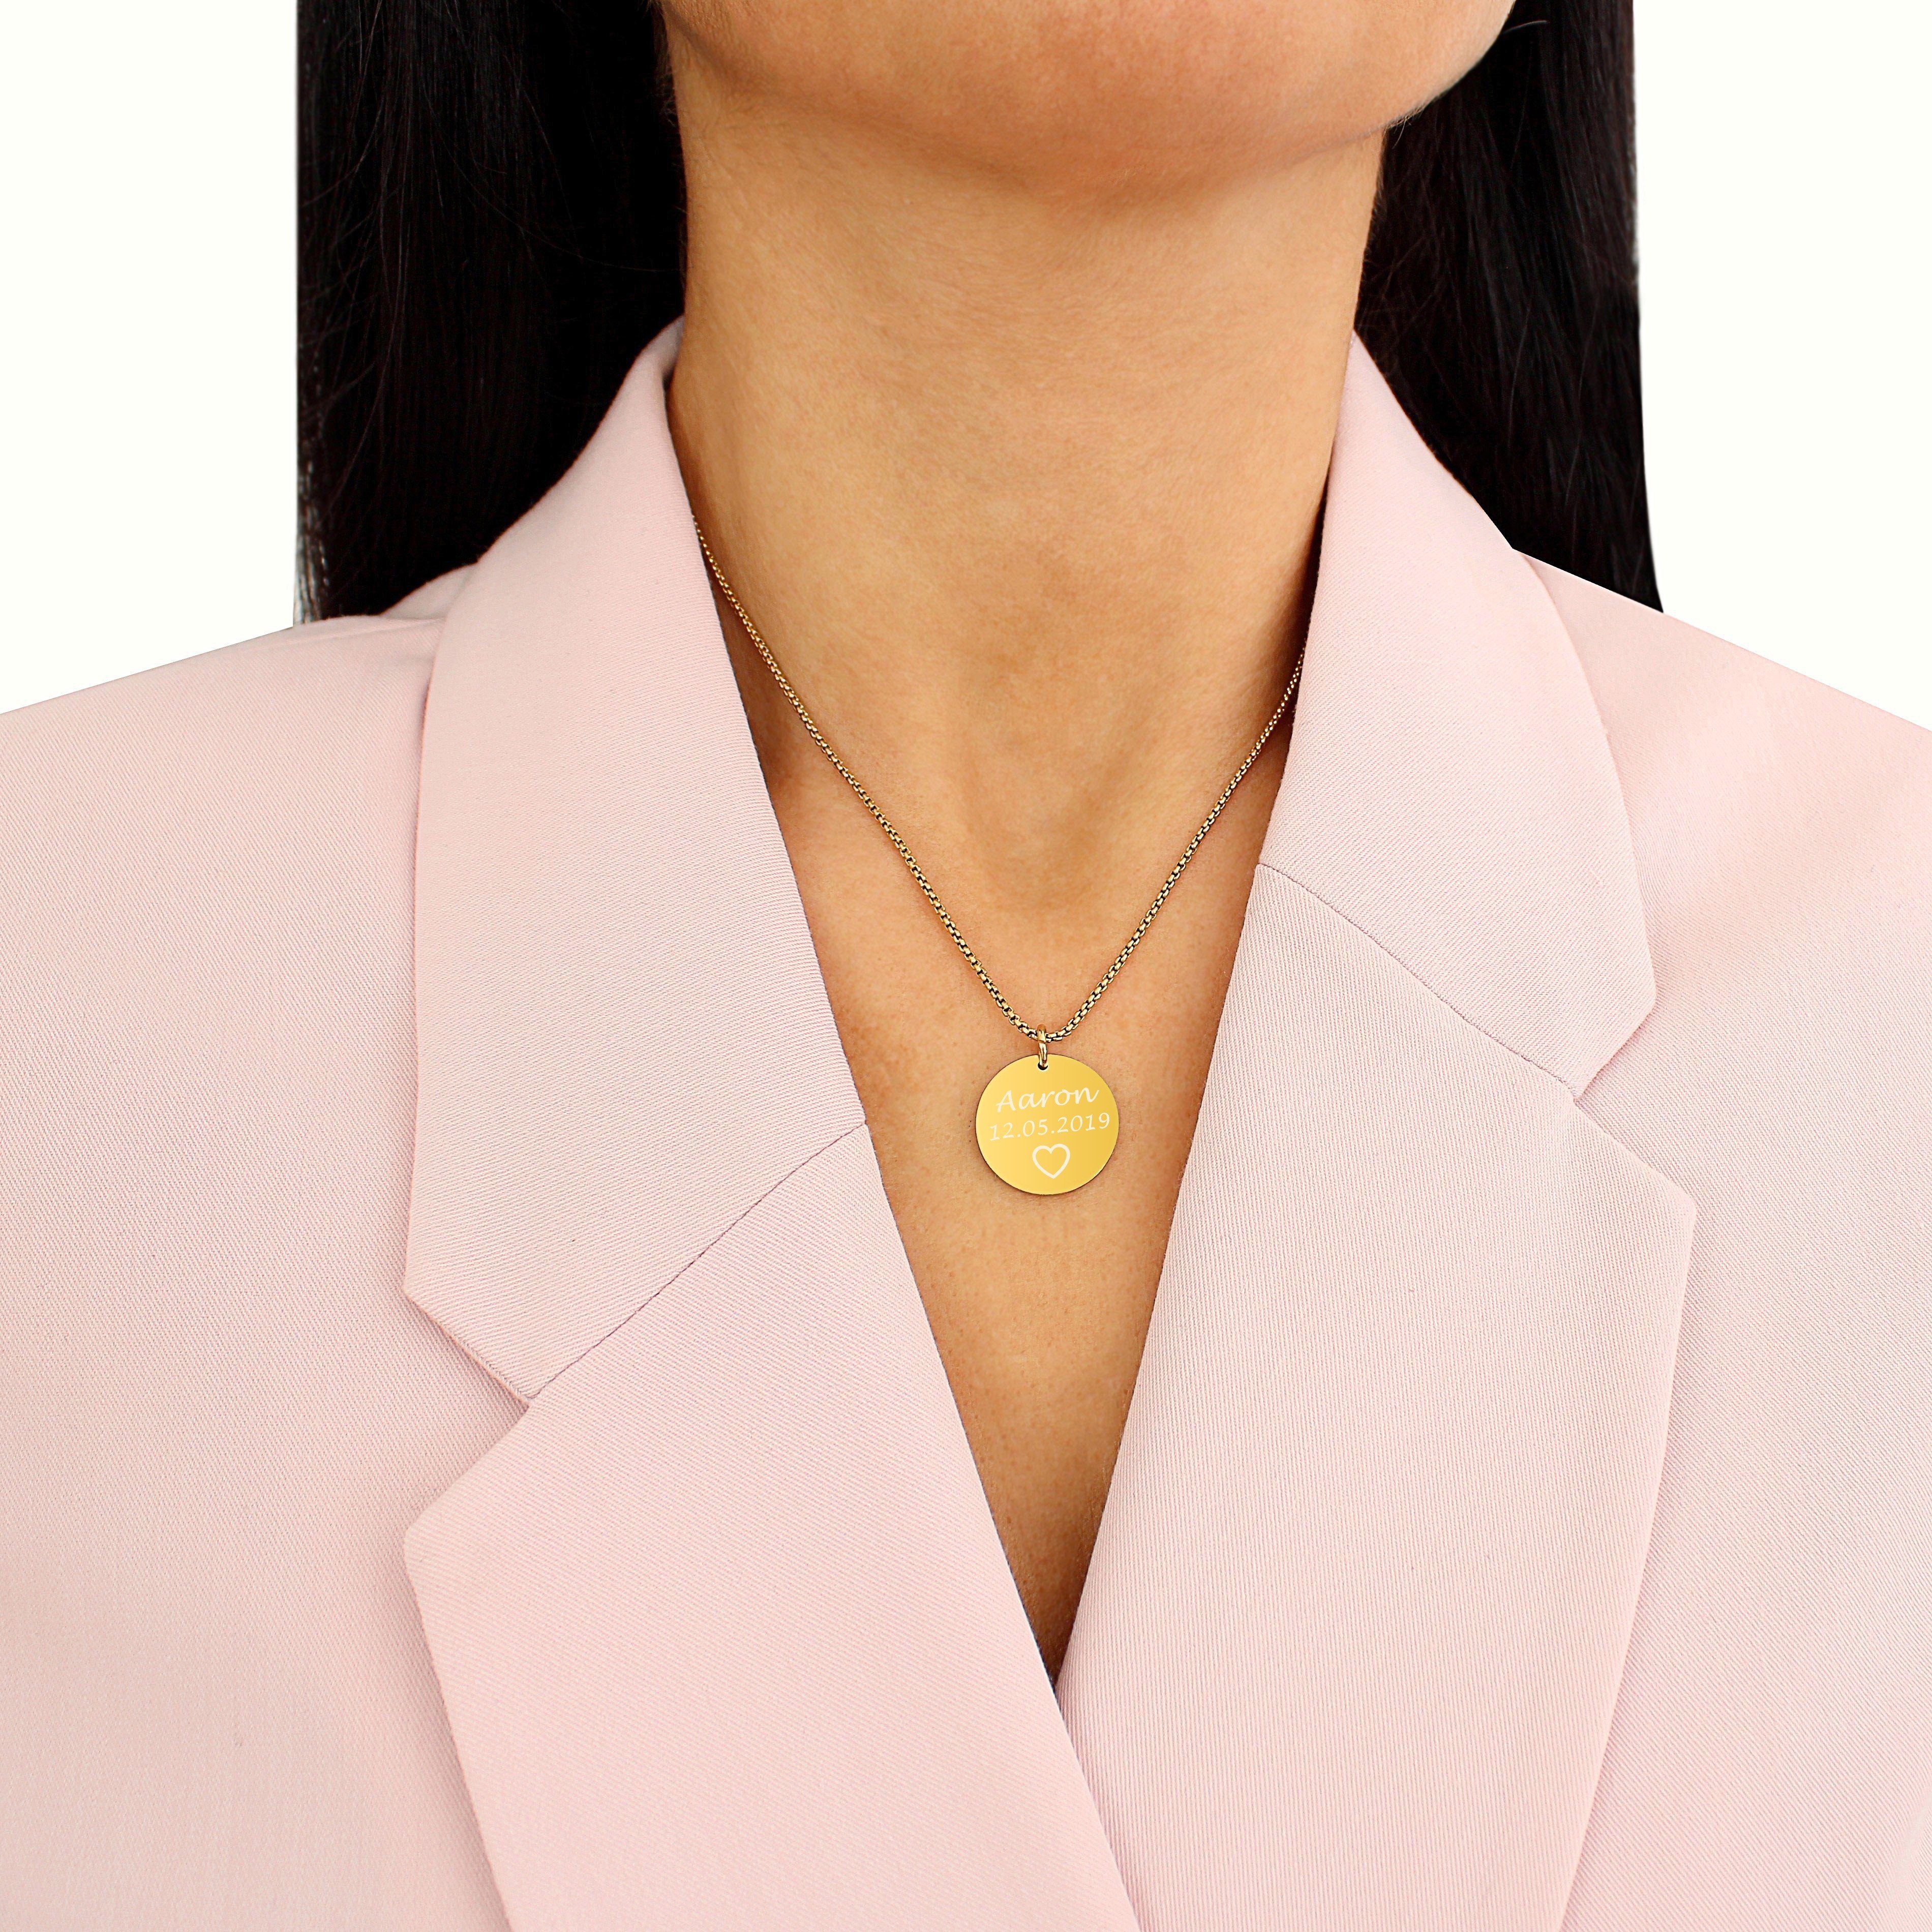 Frauen, Gravur (Plättchen Halskette mit gold, silber Timando für mit Personalisierte Namen, Kette mit Kette Gravur & sie) Anhänger, Namenskette Geschenk